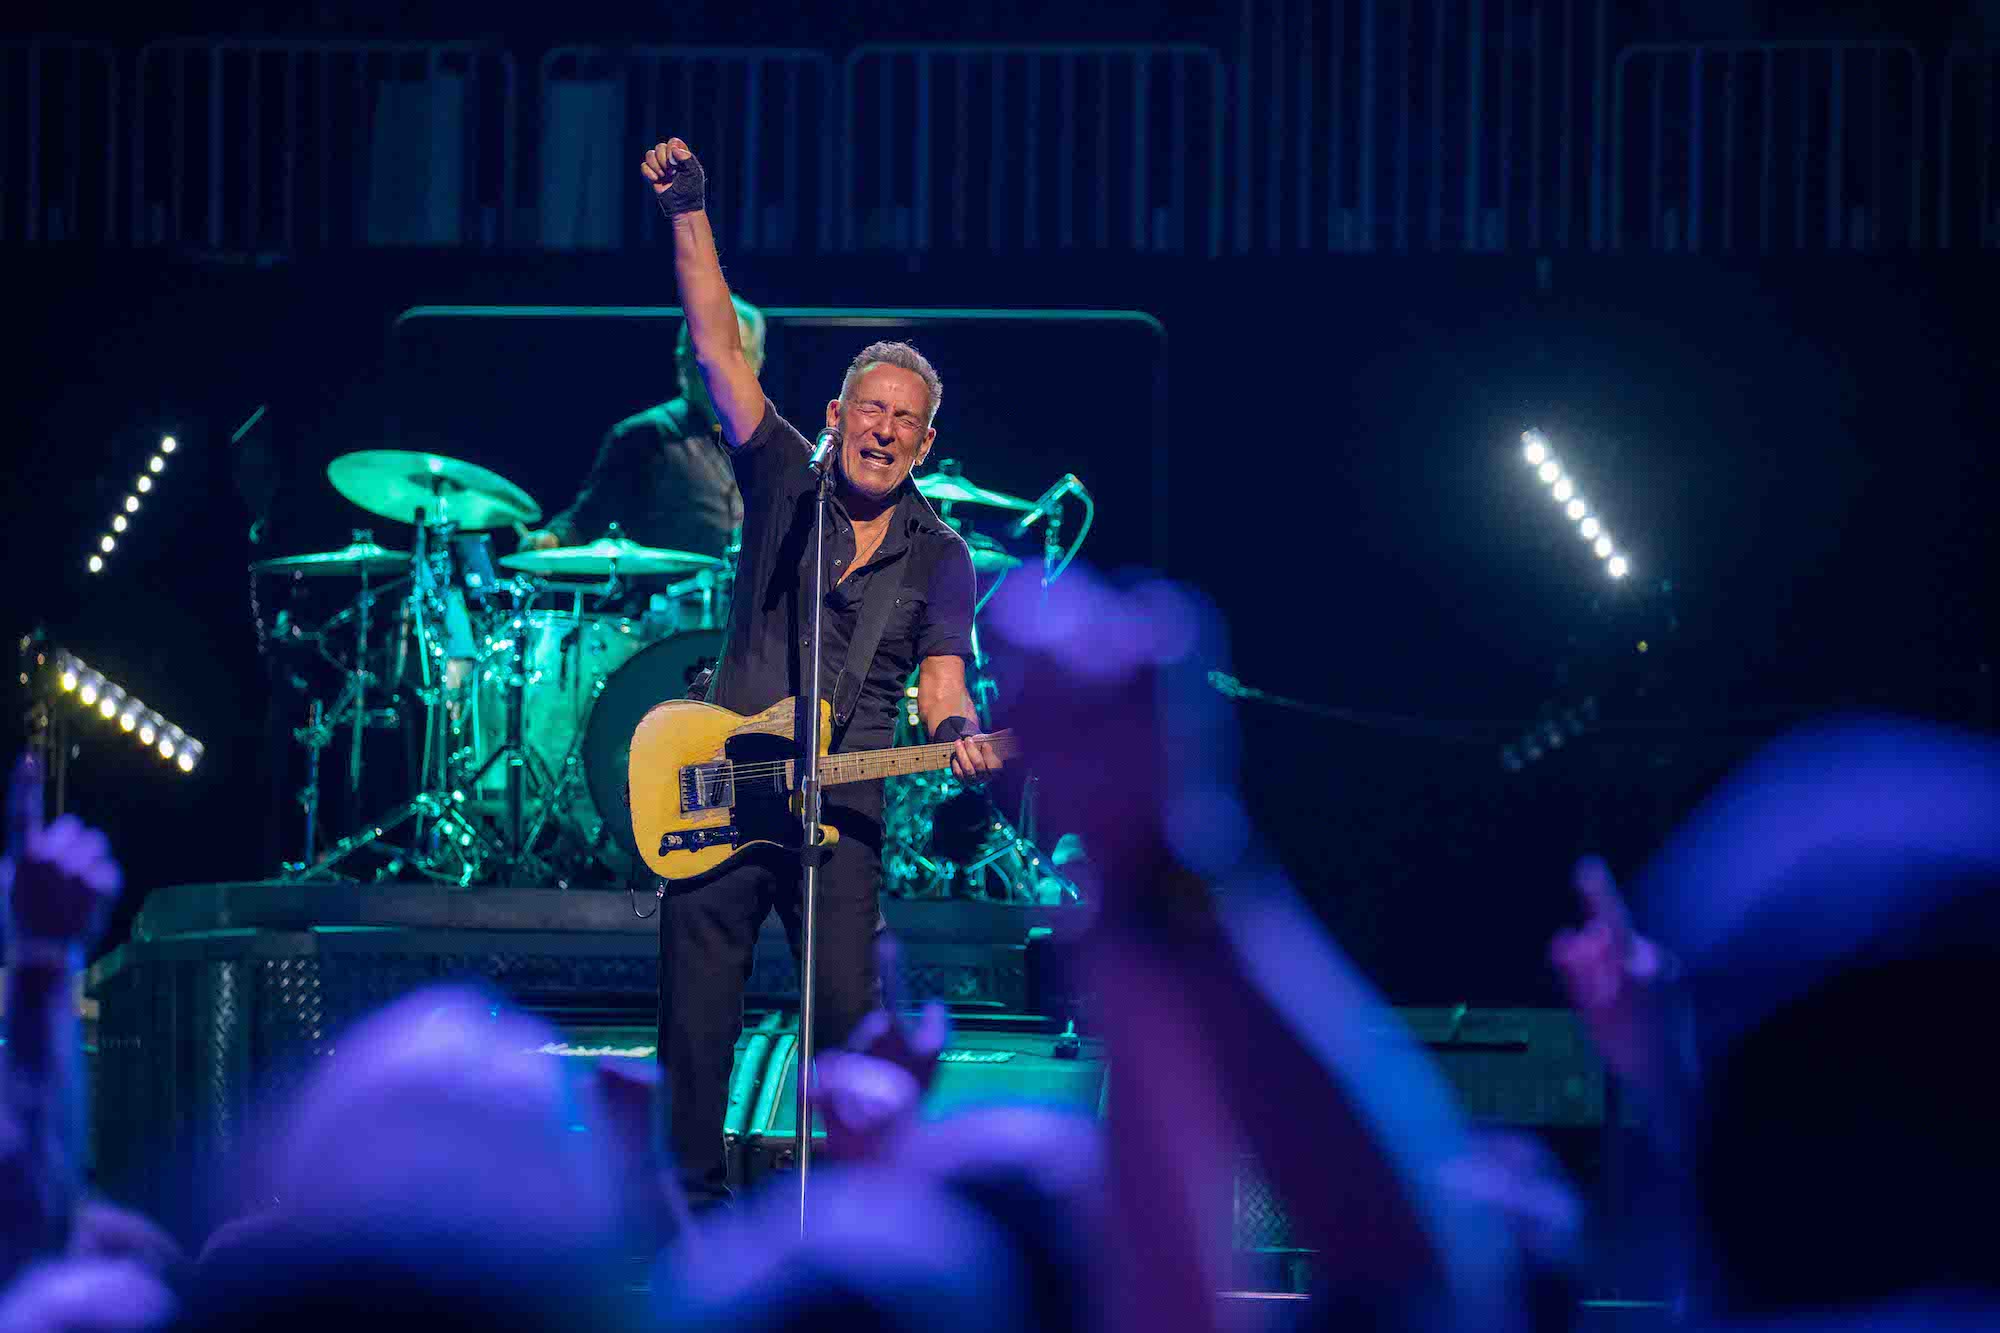 Bruce Springsteen & E Street Band at State Farm Arena, Atlanta, Georgia on February 3, 2023.